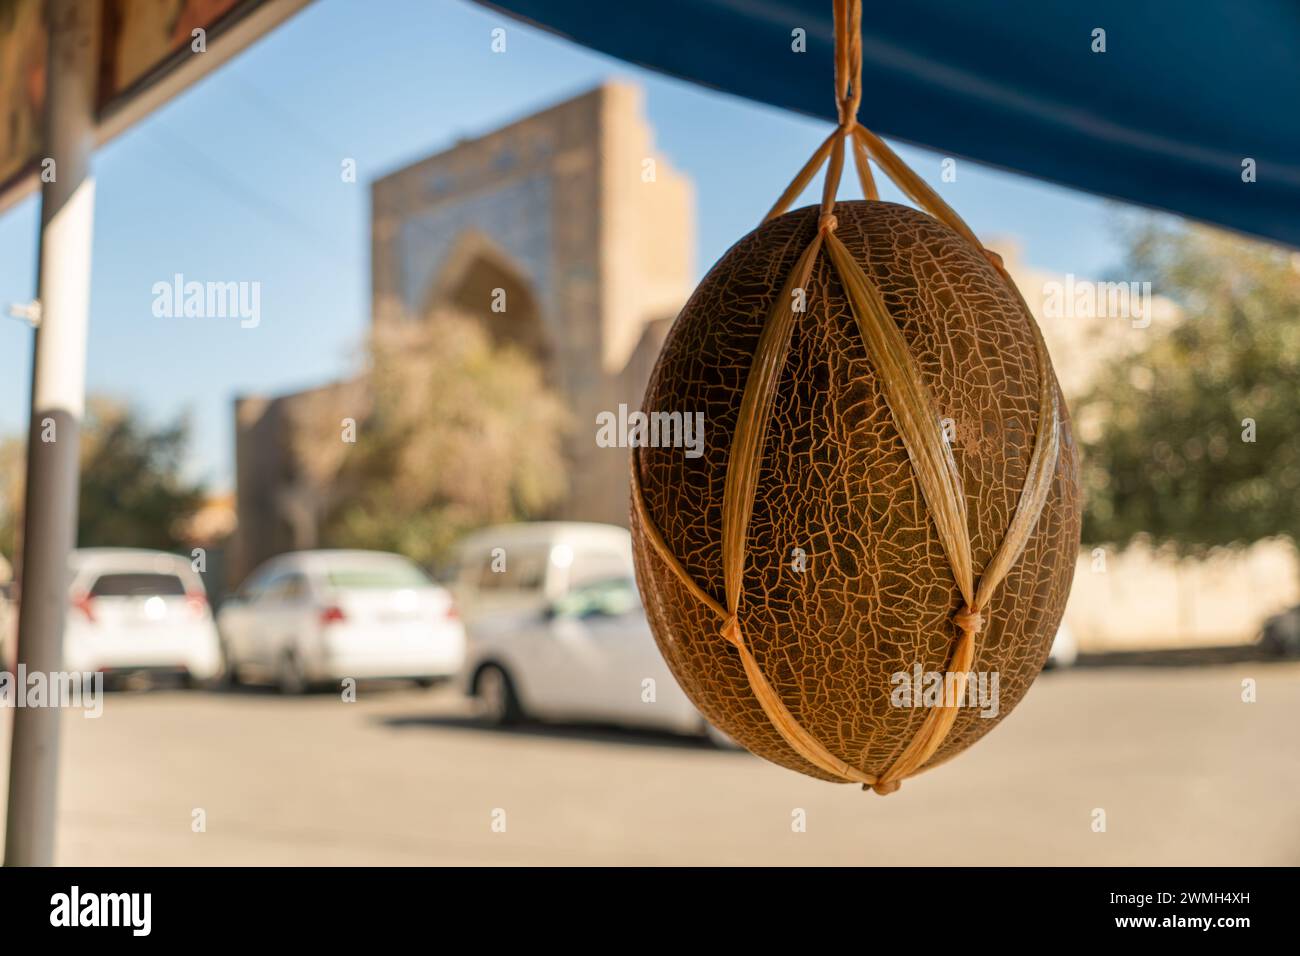 Un melon orange mûr est accroché à une corde sur le fond d'une belle madrasah Banque D'Images